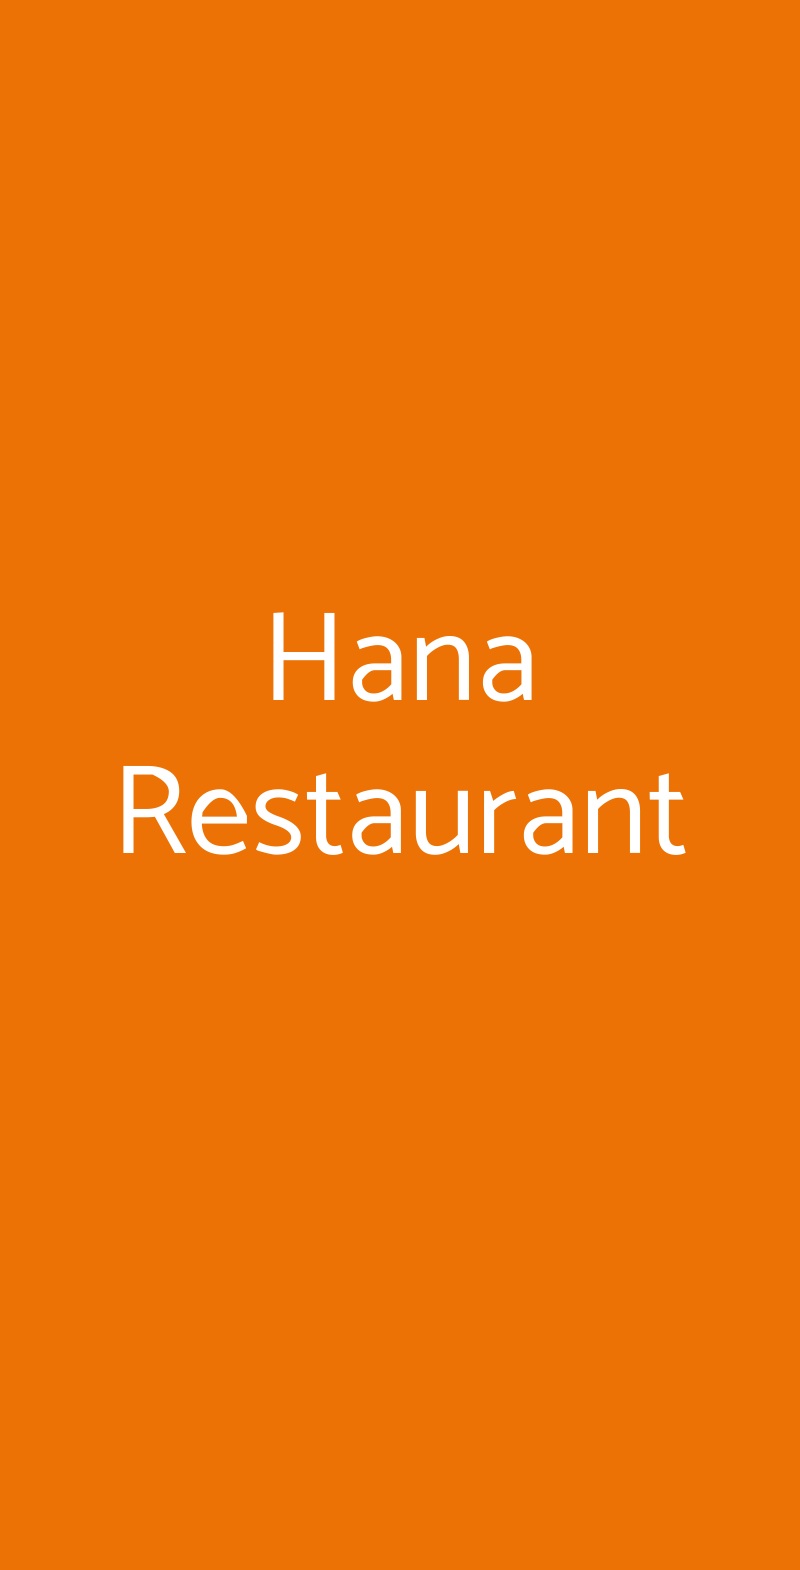 Hana Restaurant Milano menù 1 pagina